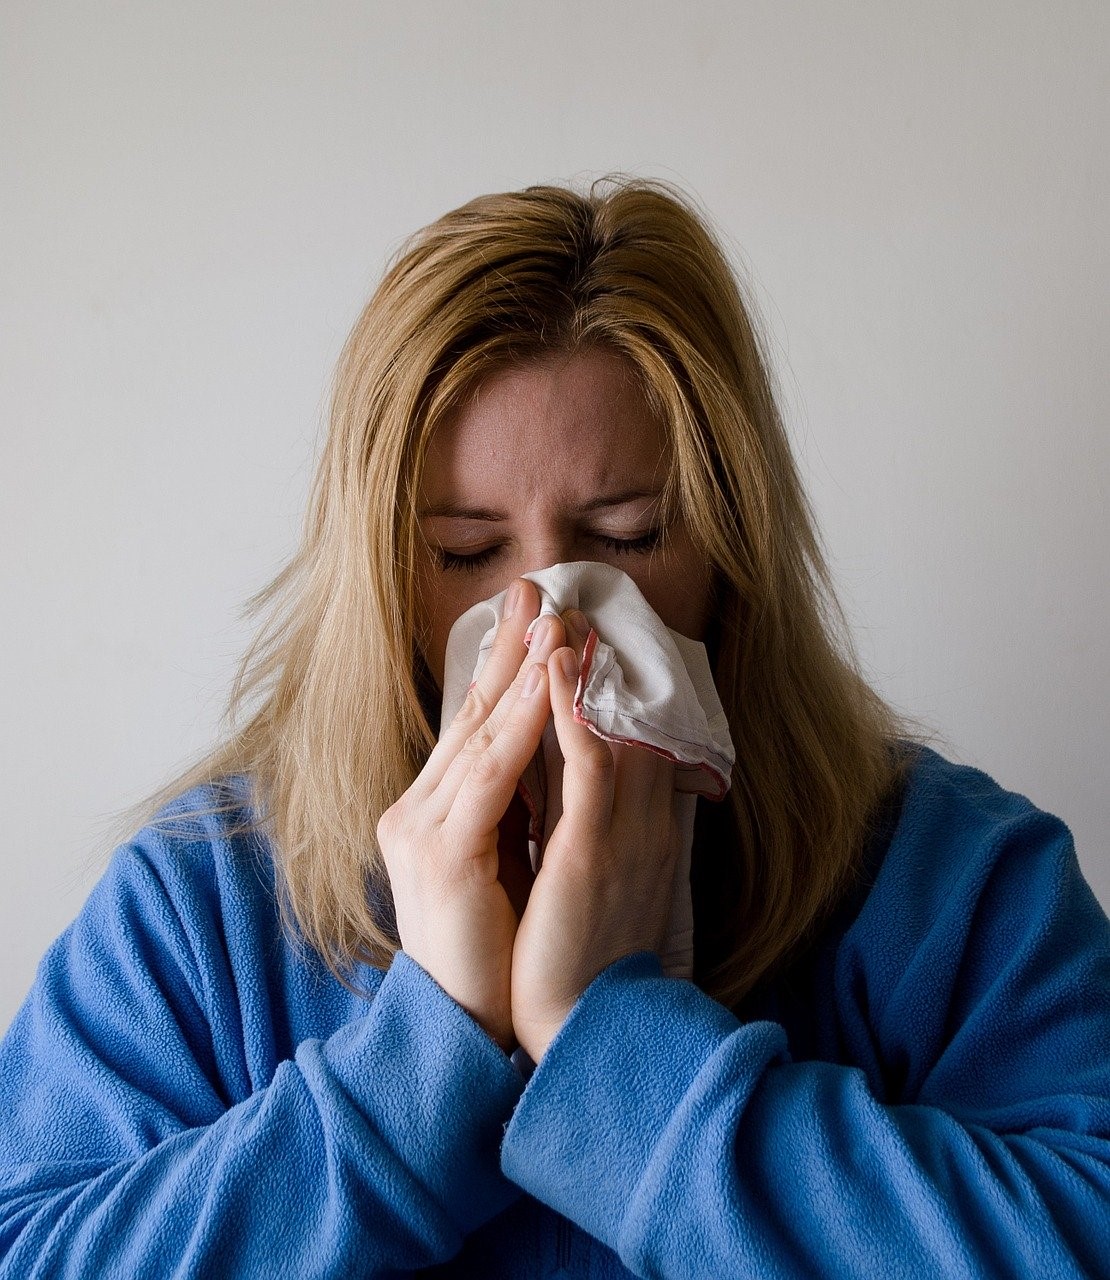  tidak sedikit dari kita yang berjuang melawan serangan berbagai bakteri dan virus yang da Hindari Obat-obatan, Inilah 7 Tips Mengobati Flu Secara Alami Tanpa Perlu ke Dokter